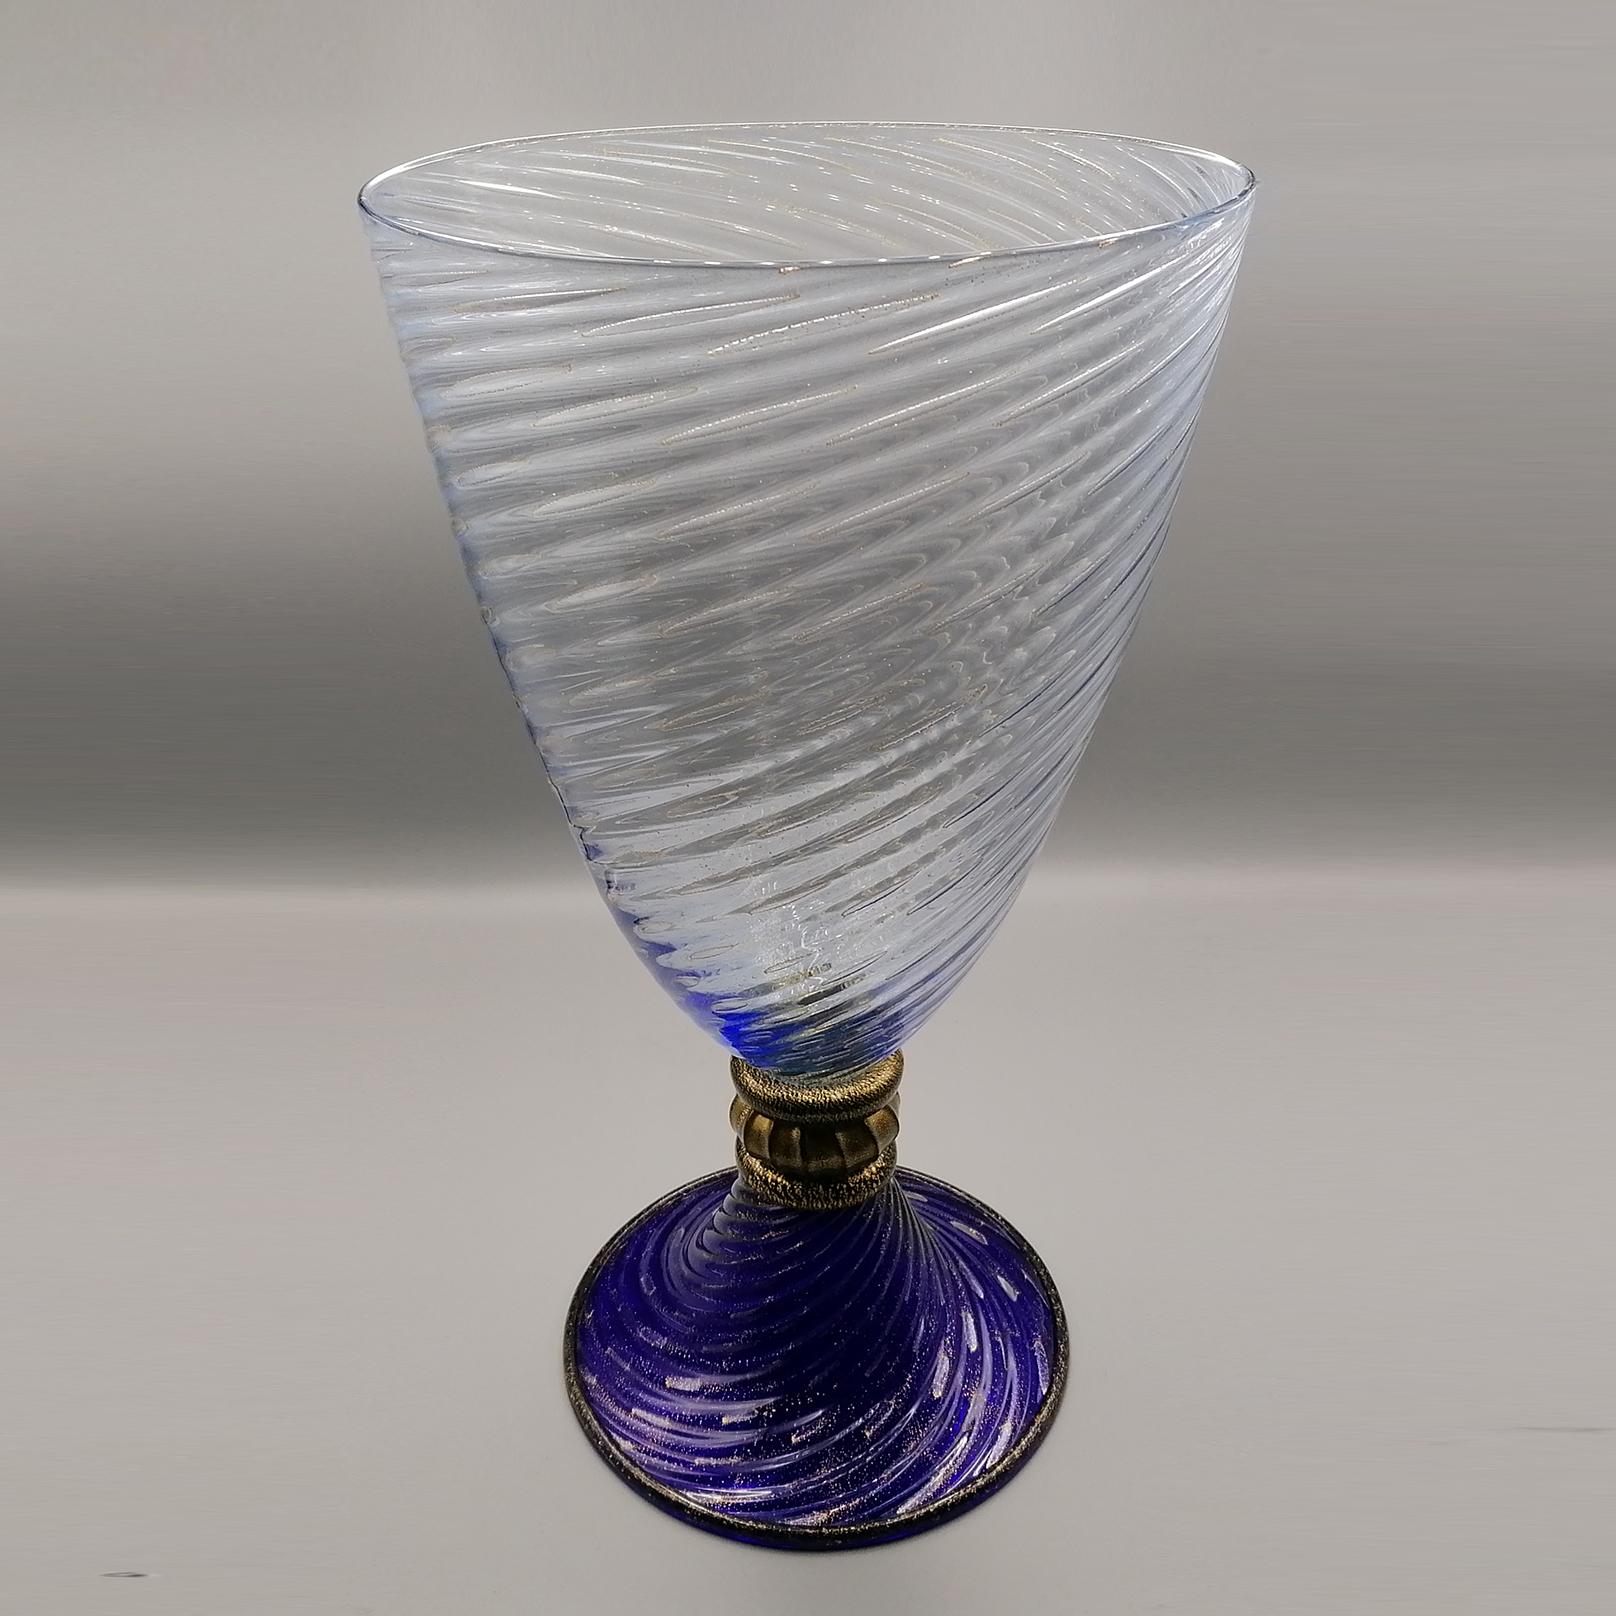 vase en verre de Murano italien du 20e siècle

Vase en verre fabriqué à Murano - Venise - Italie par la manufacture artisanale Gabbiani.
La base est bleu foncé avec quelques paillettes d'or pur insérées, tandis que la tige est presque entièrement